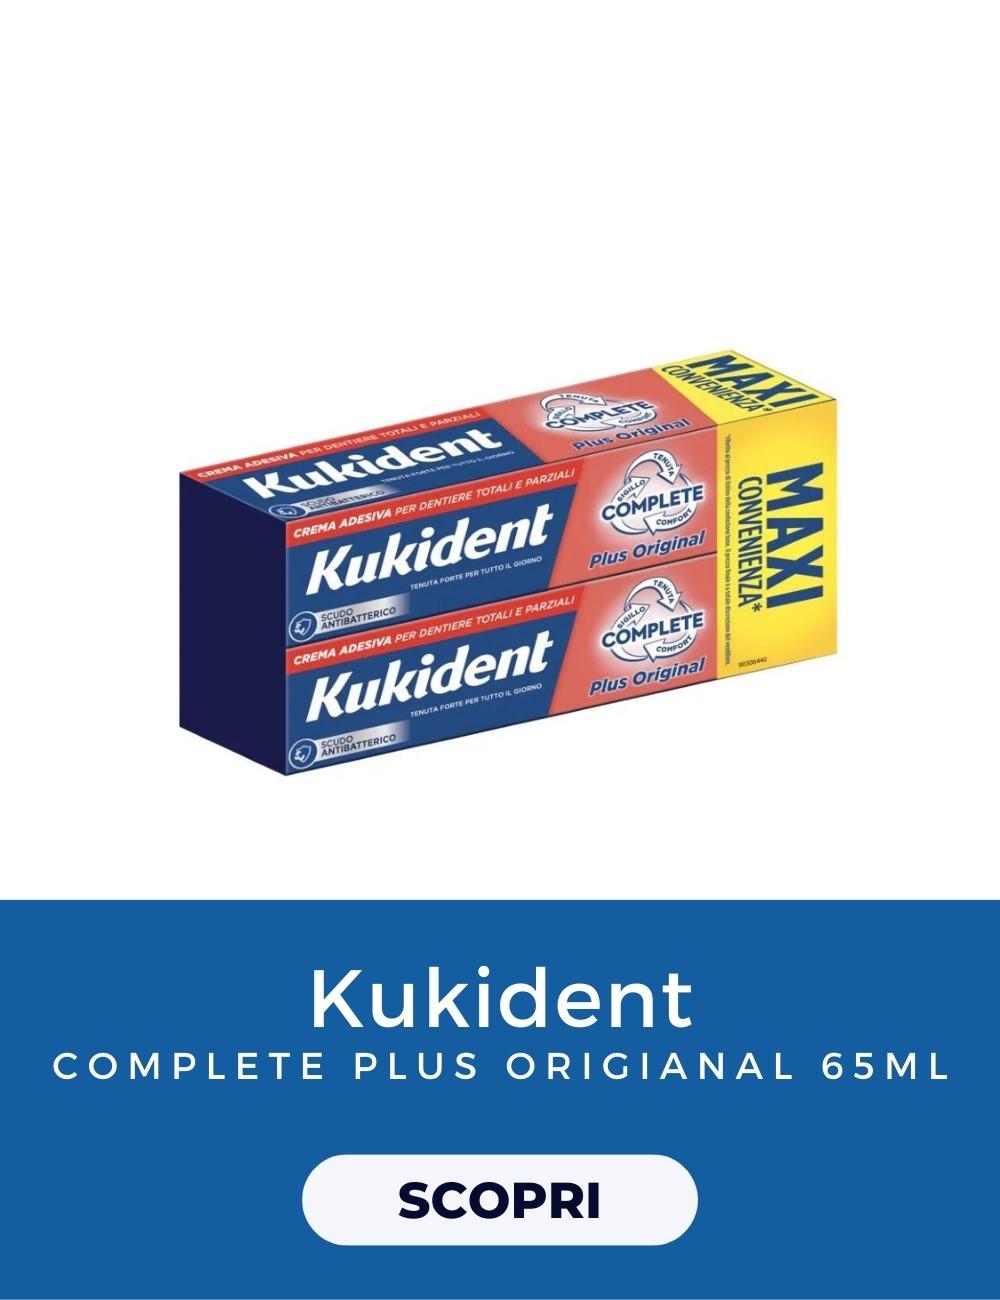 Kukident Complete Plus Original Formato MAXI Convenienza Pacco Doppio 2X65g